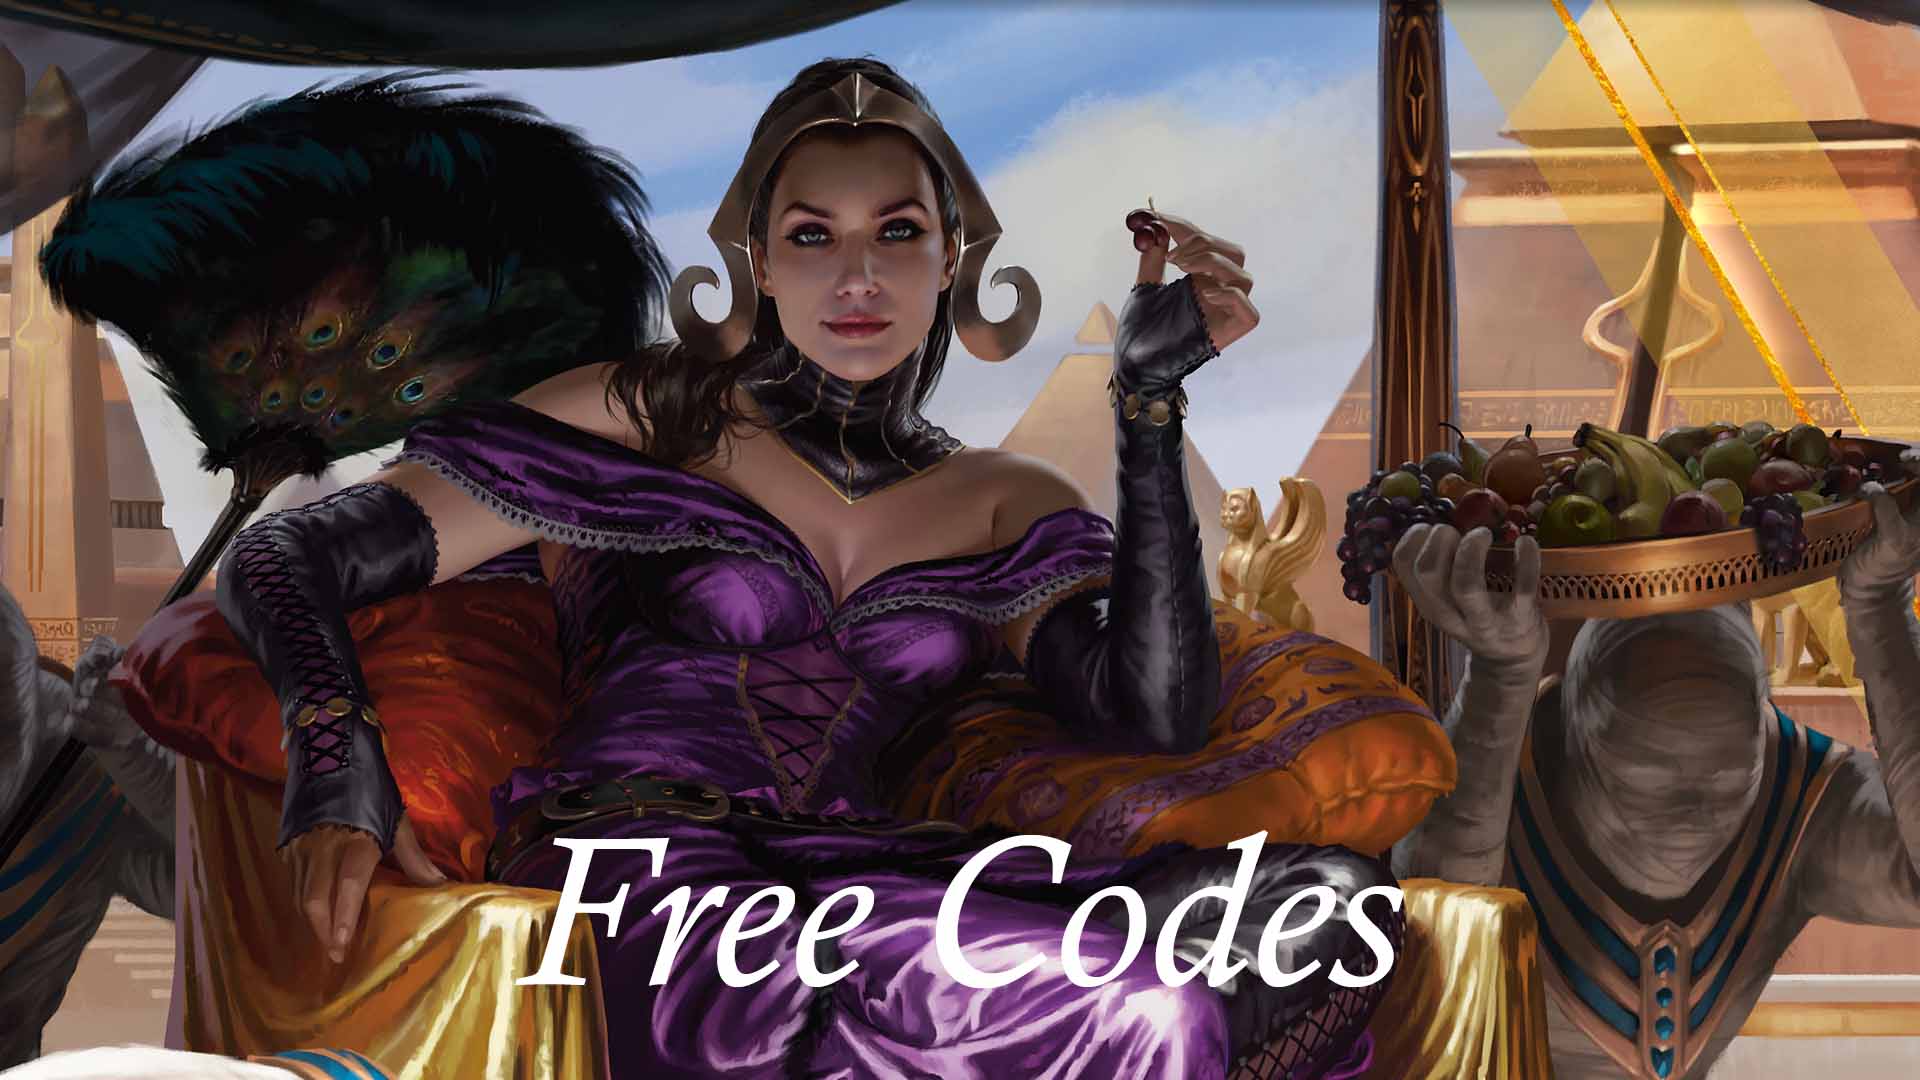 download free magic arena codes